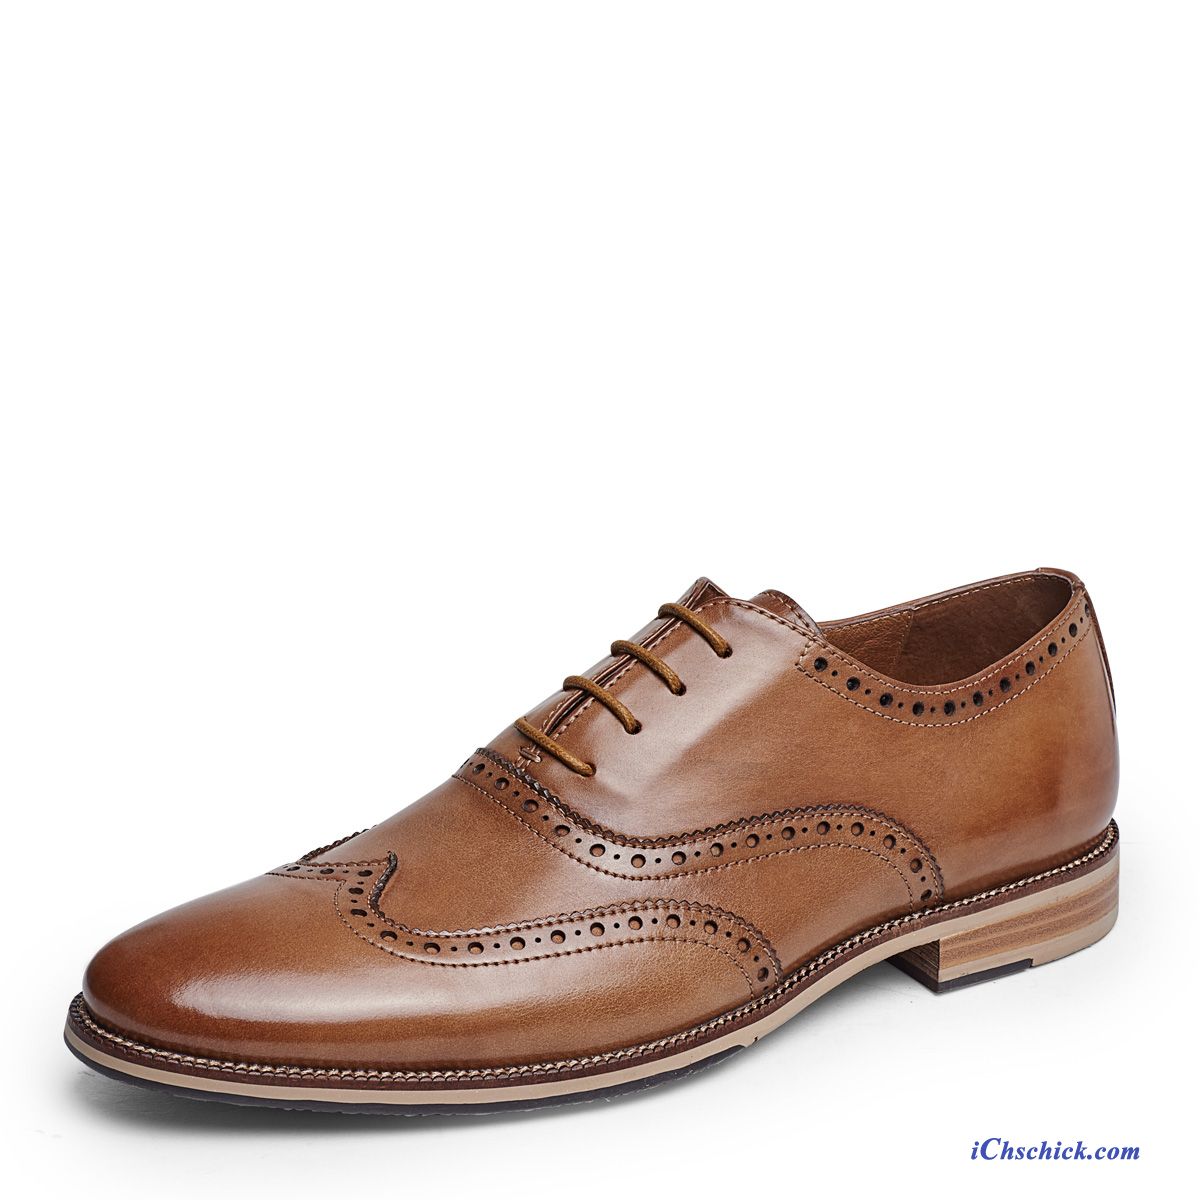 Leder Schuhe Herren Blau, Italienische Schuhe Herren Online Billig